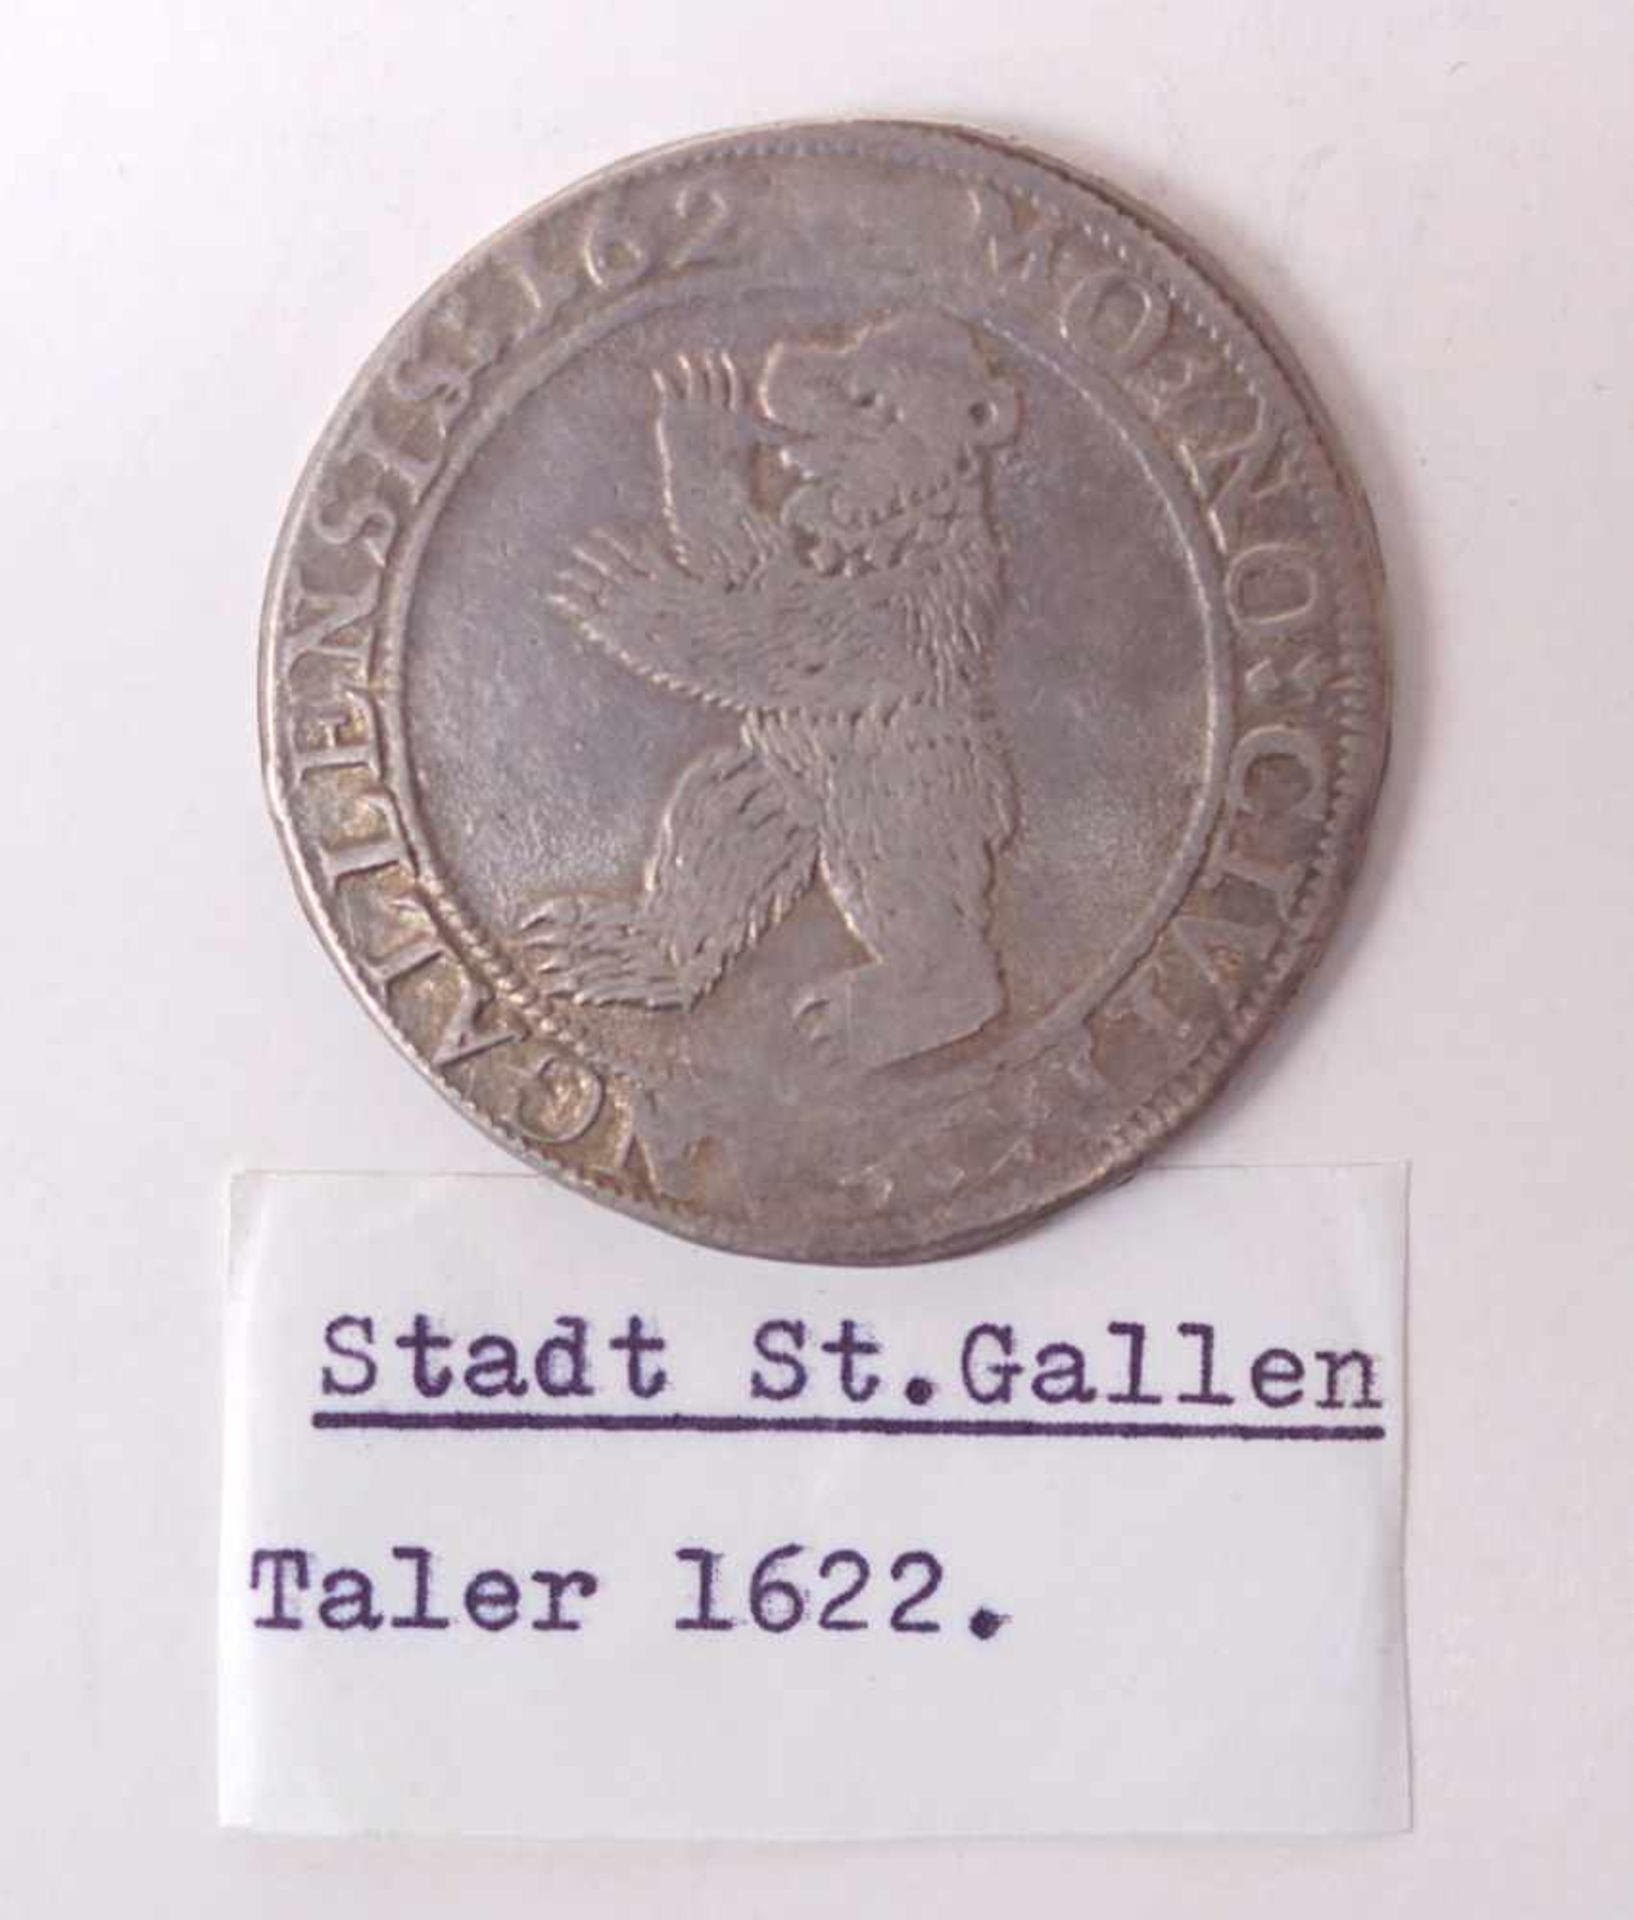 Stadt Gallen, Taler von 1622VS: Das Wappentier der Bär der Stadt St. Gallen, Umschrift: MO:NO: